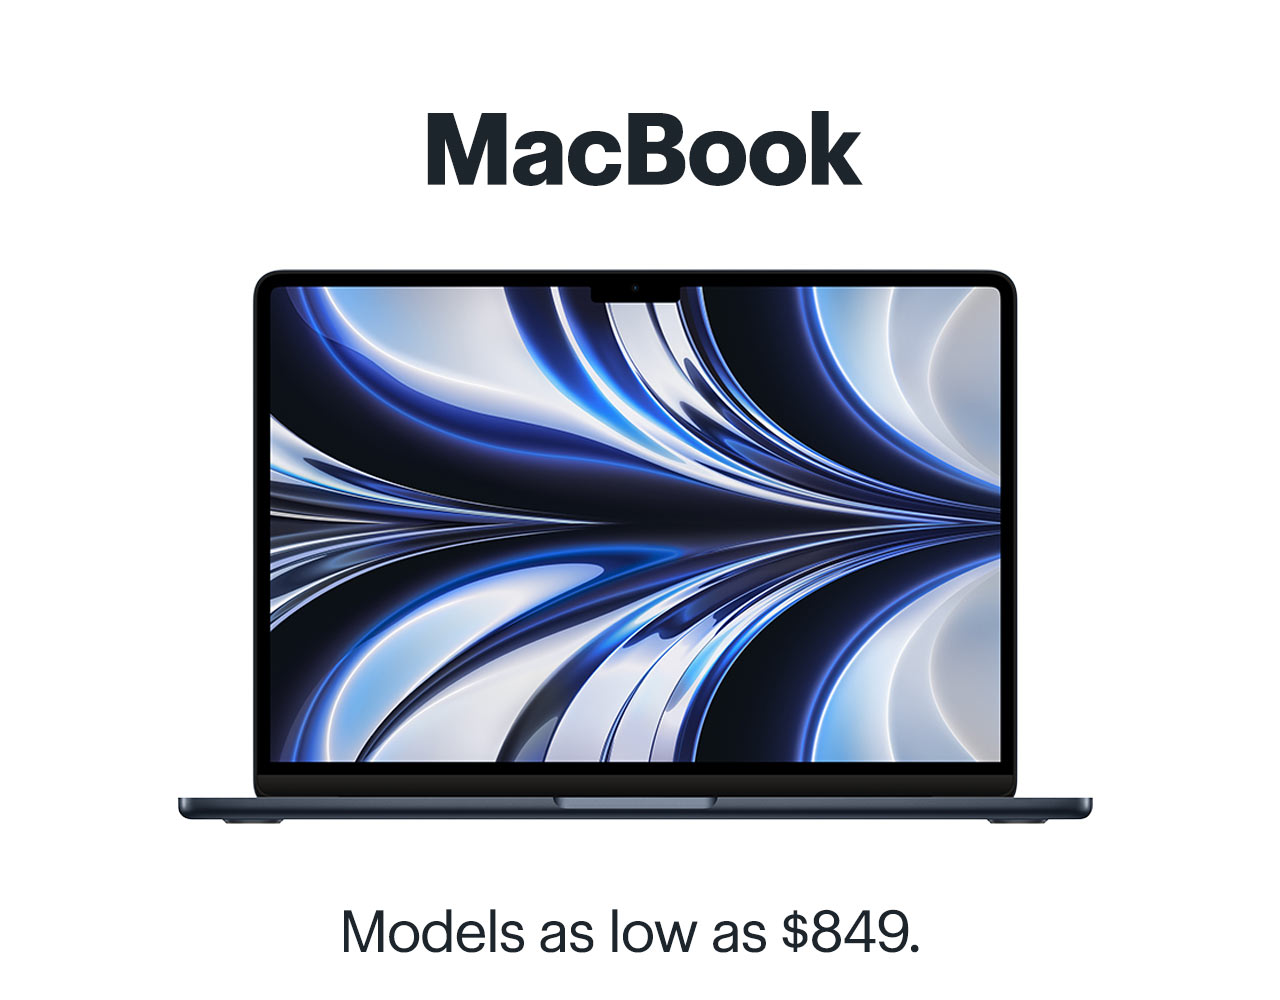 MacBook. Models as low as $849.